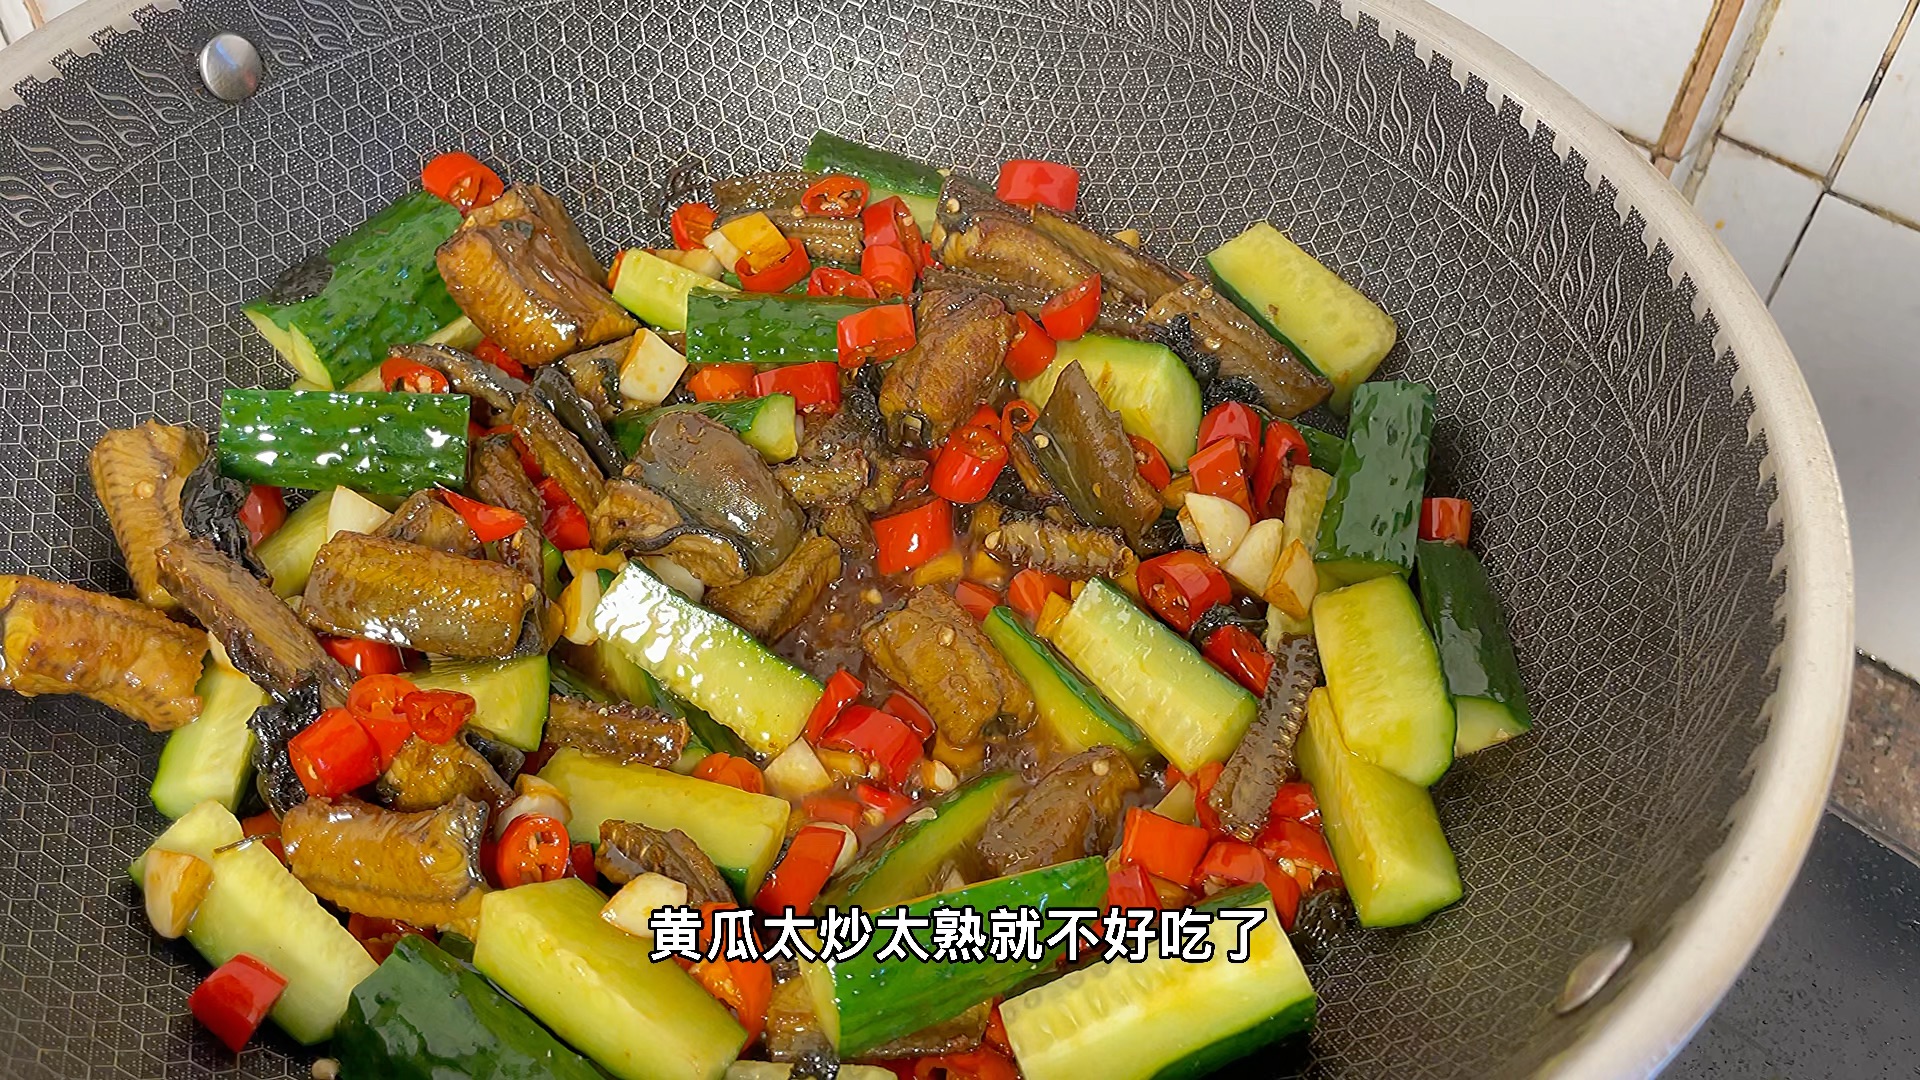 黄瓜配黄鳝神仙吃饭法,配上3碗米饭,又是美美的一顿